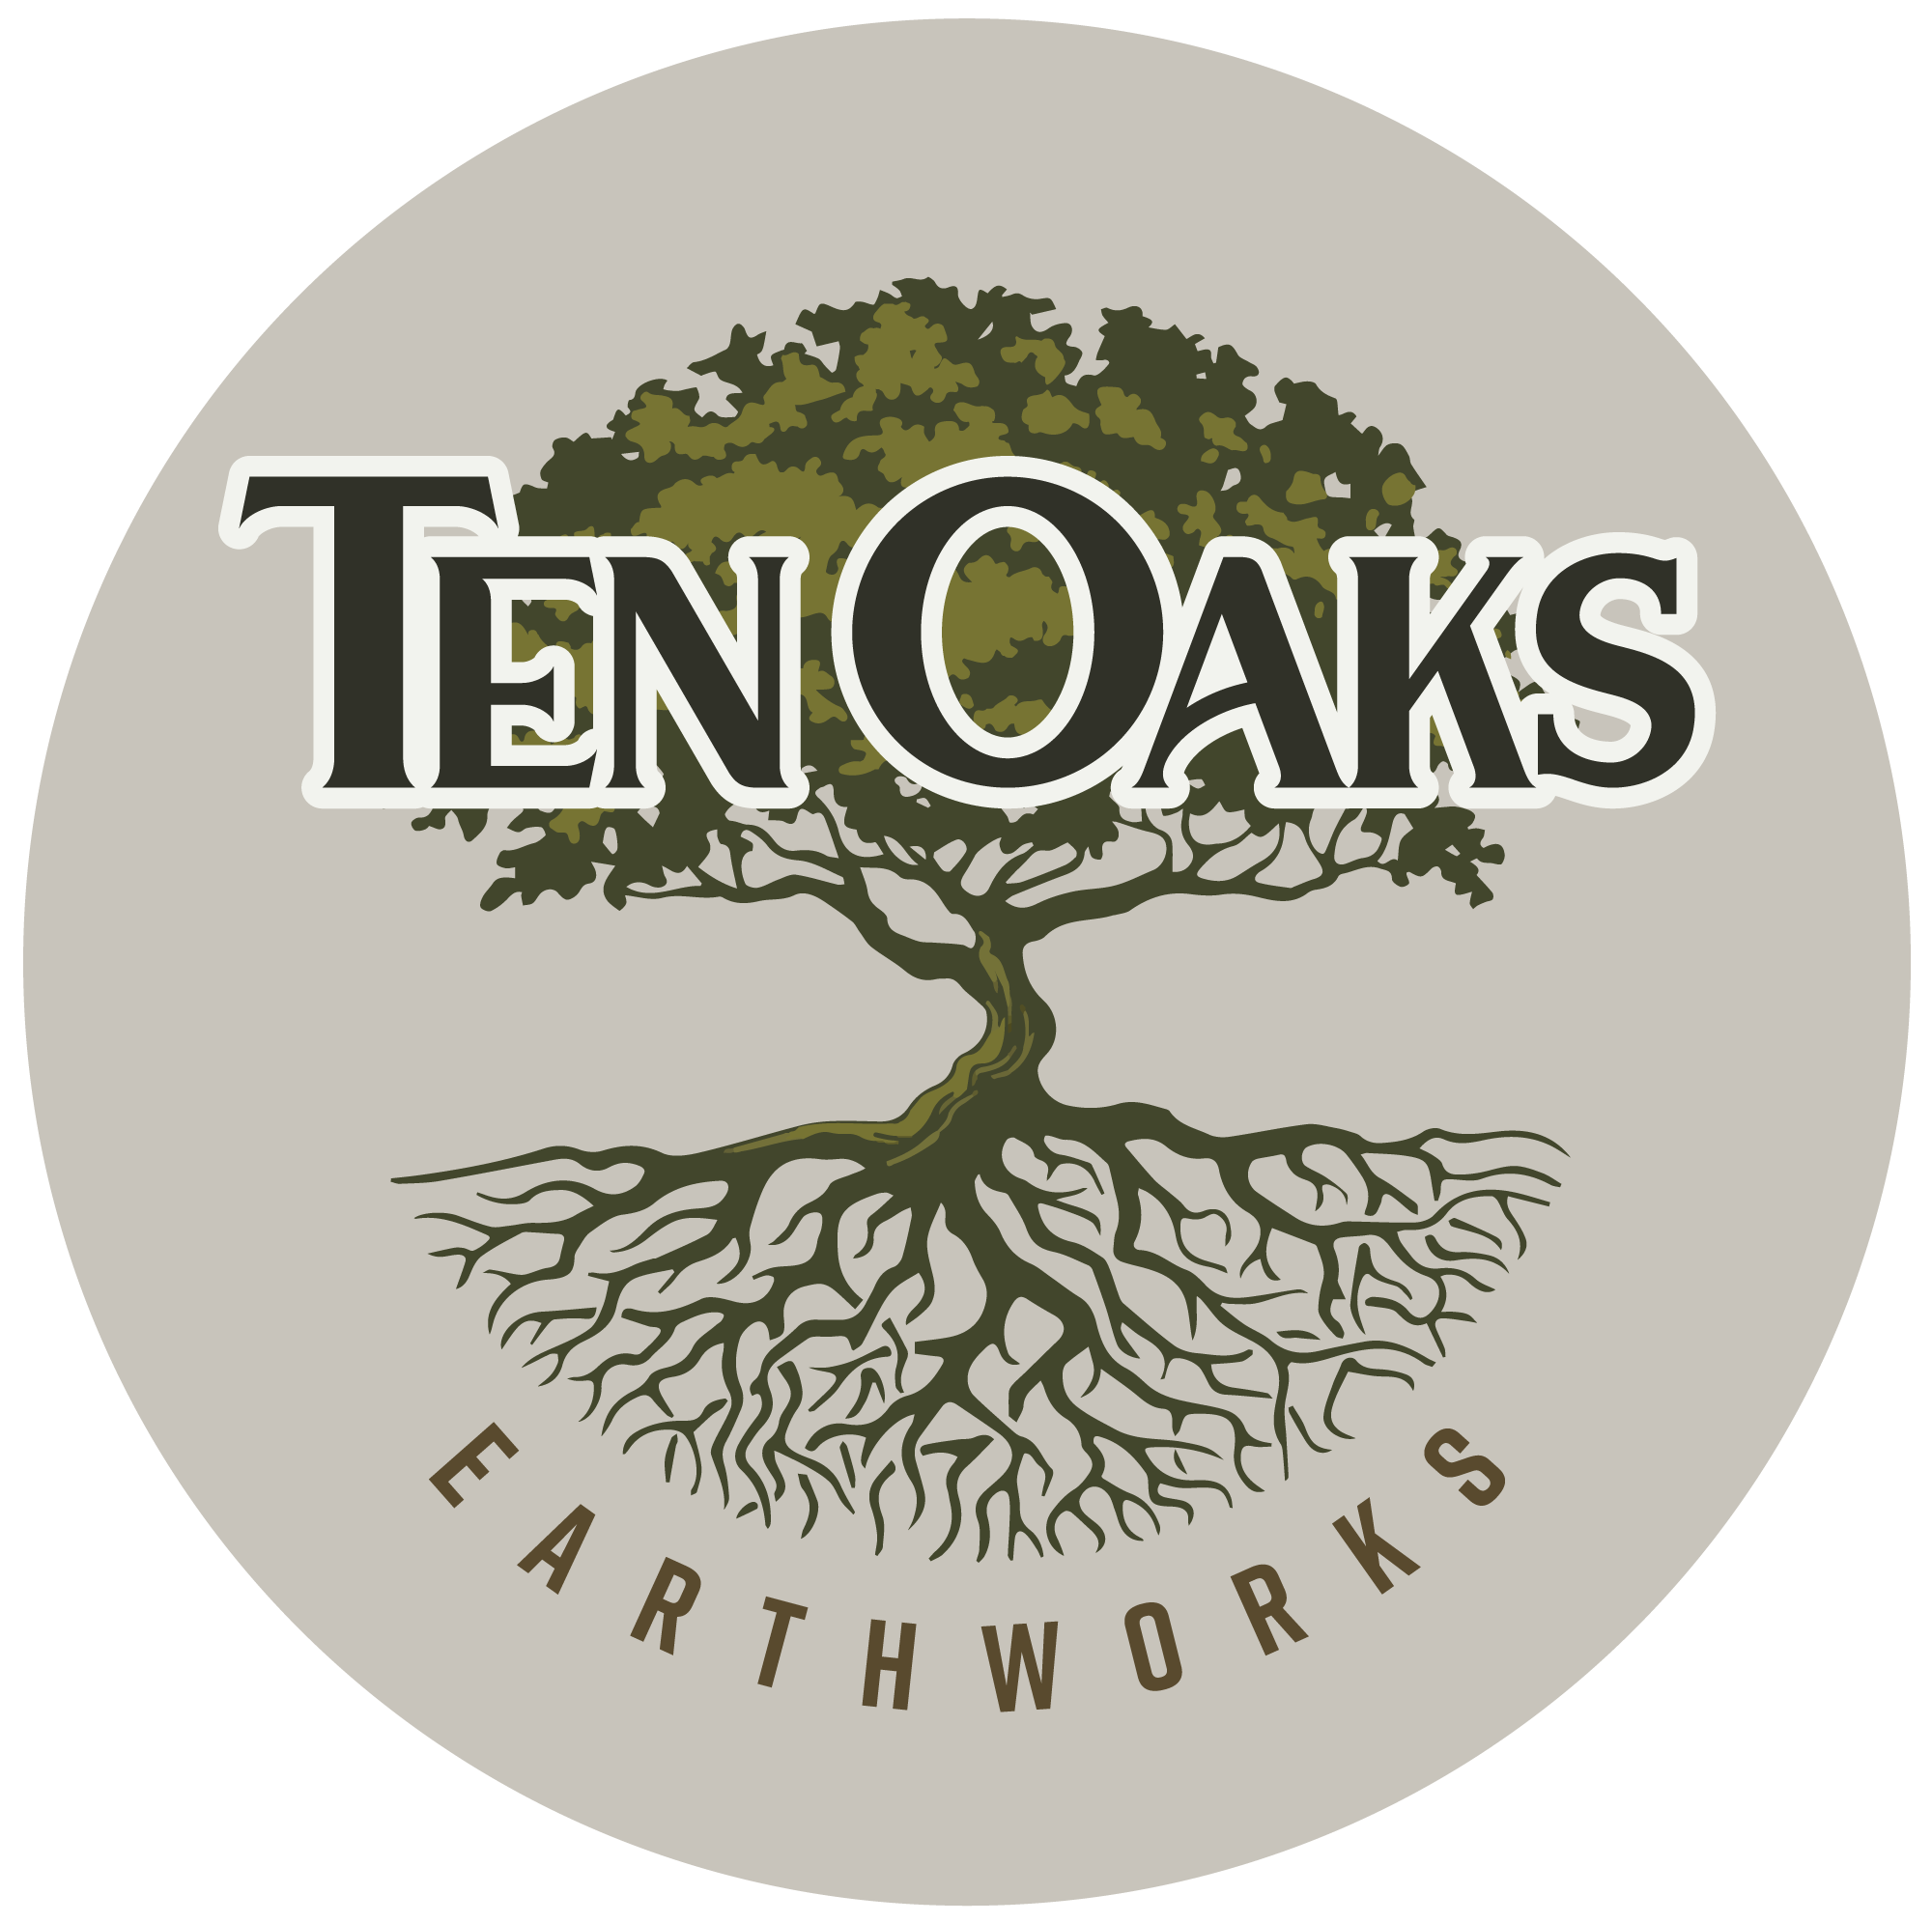 Ten Oaks Earthworks